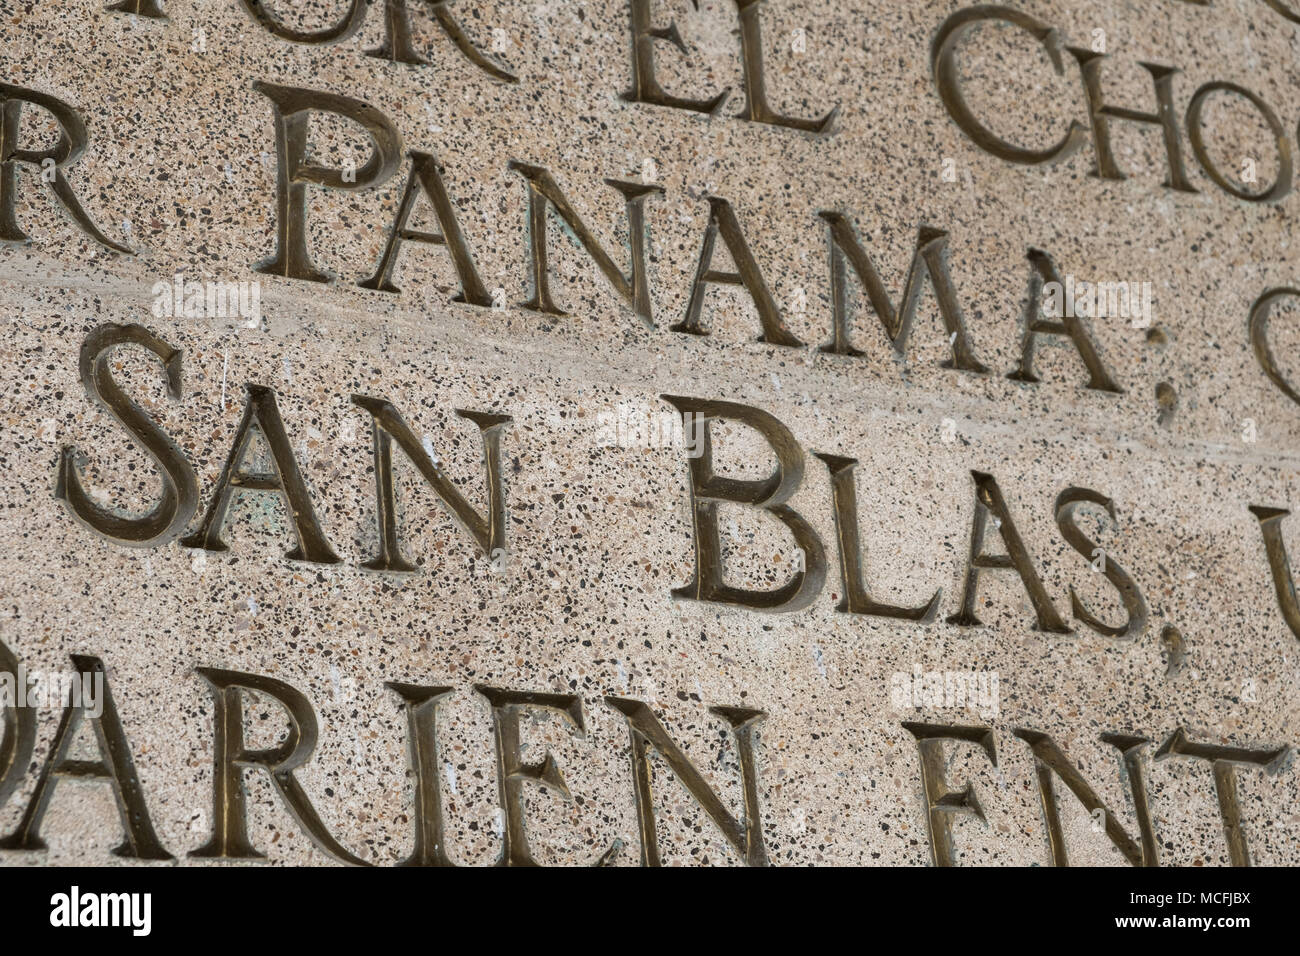 Panama City, Panama - march 2018: Closeup of the words 'San Blas' at   French Plaza monument (Plaza de Francia) in Casco Viejo, Panama City, Panama Stock Photo